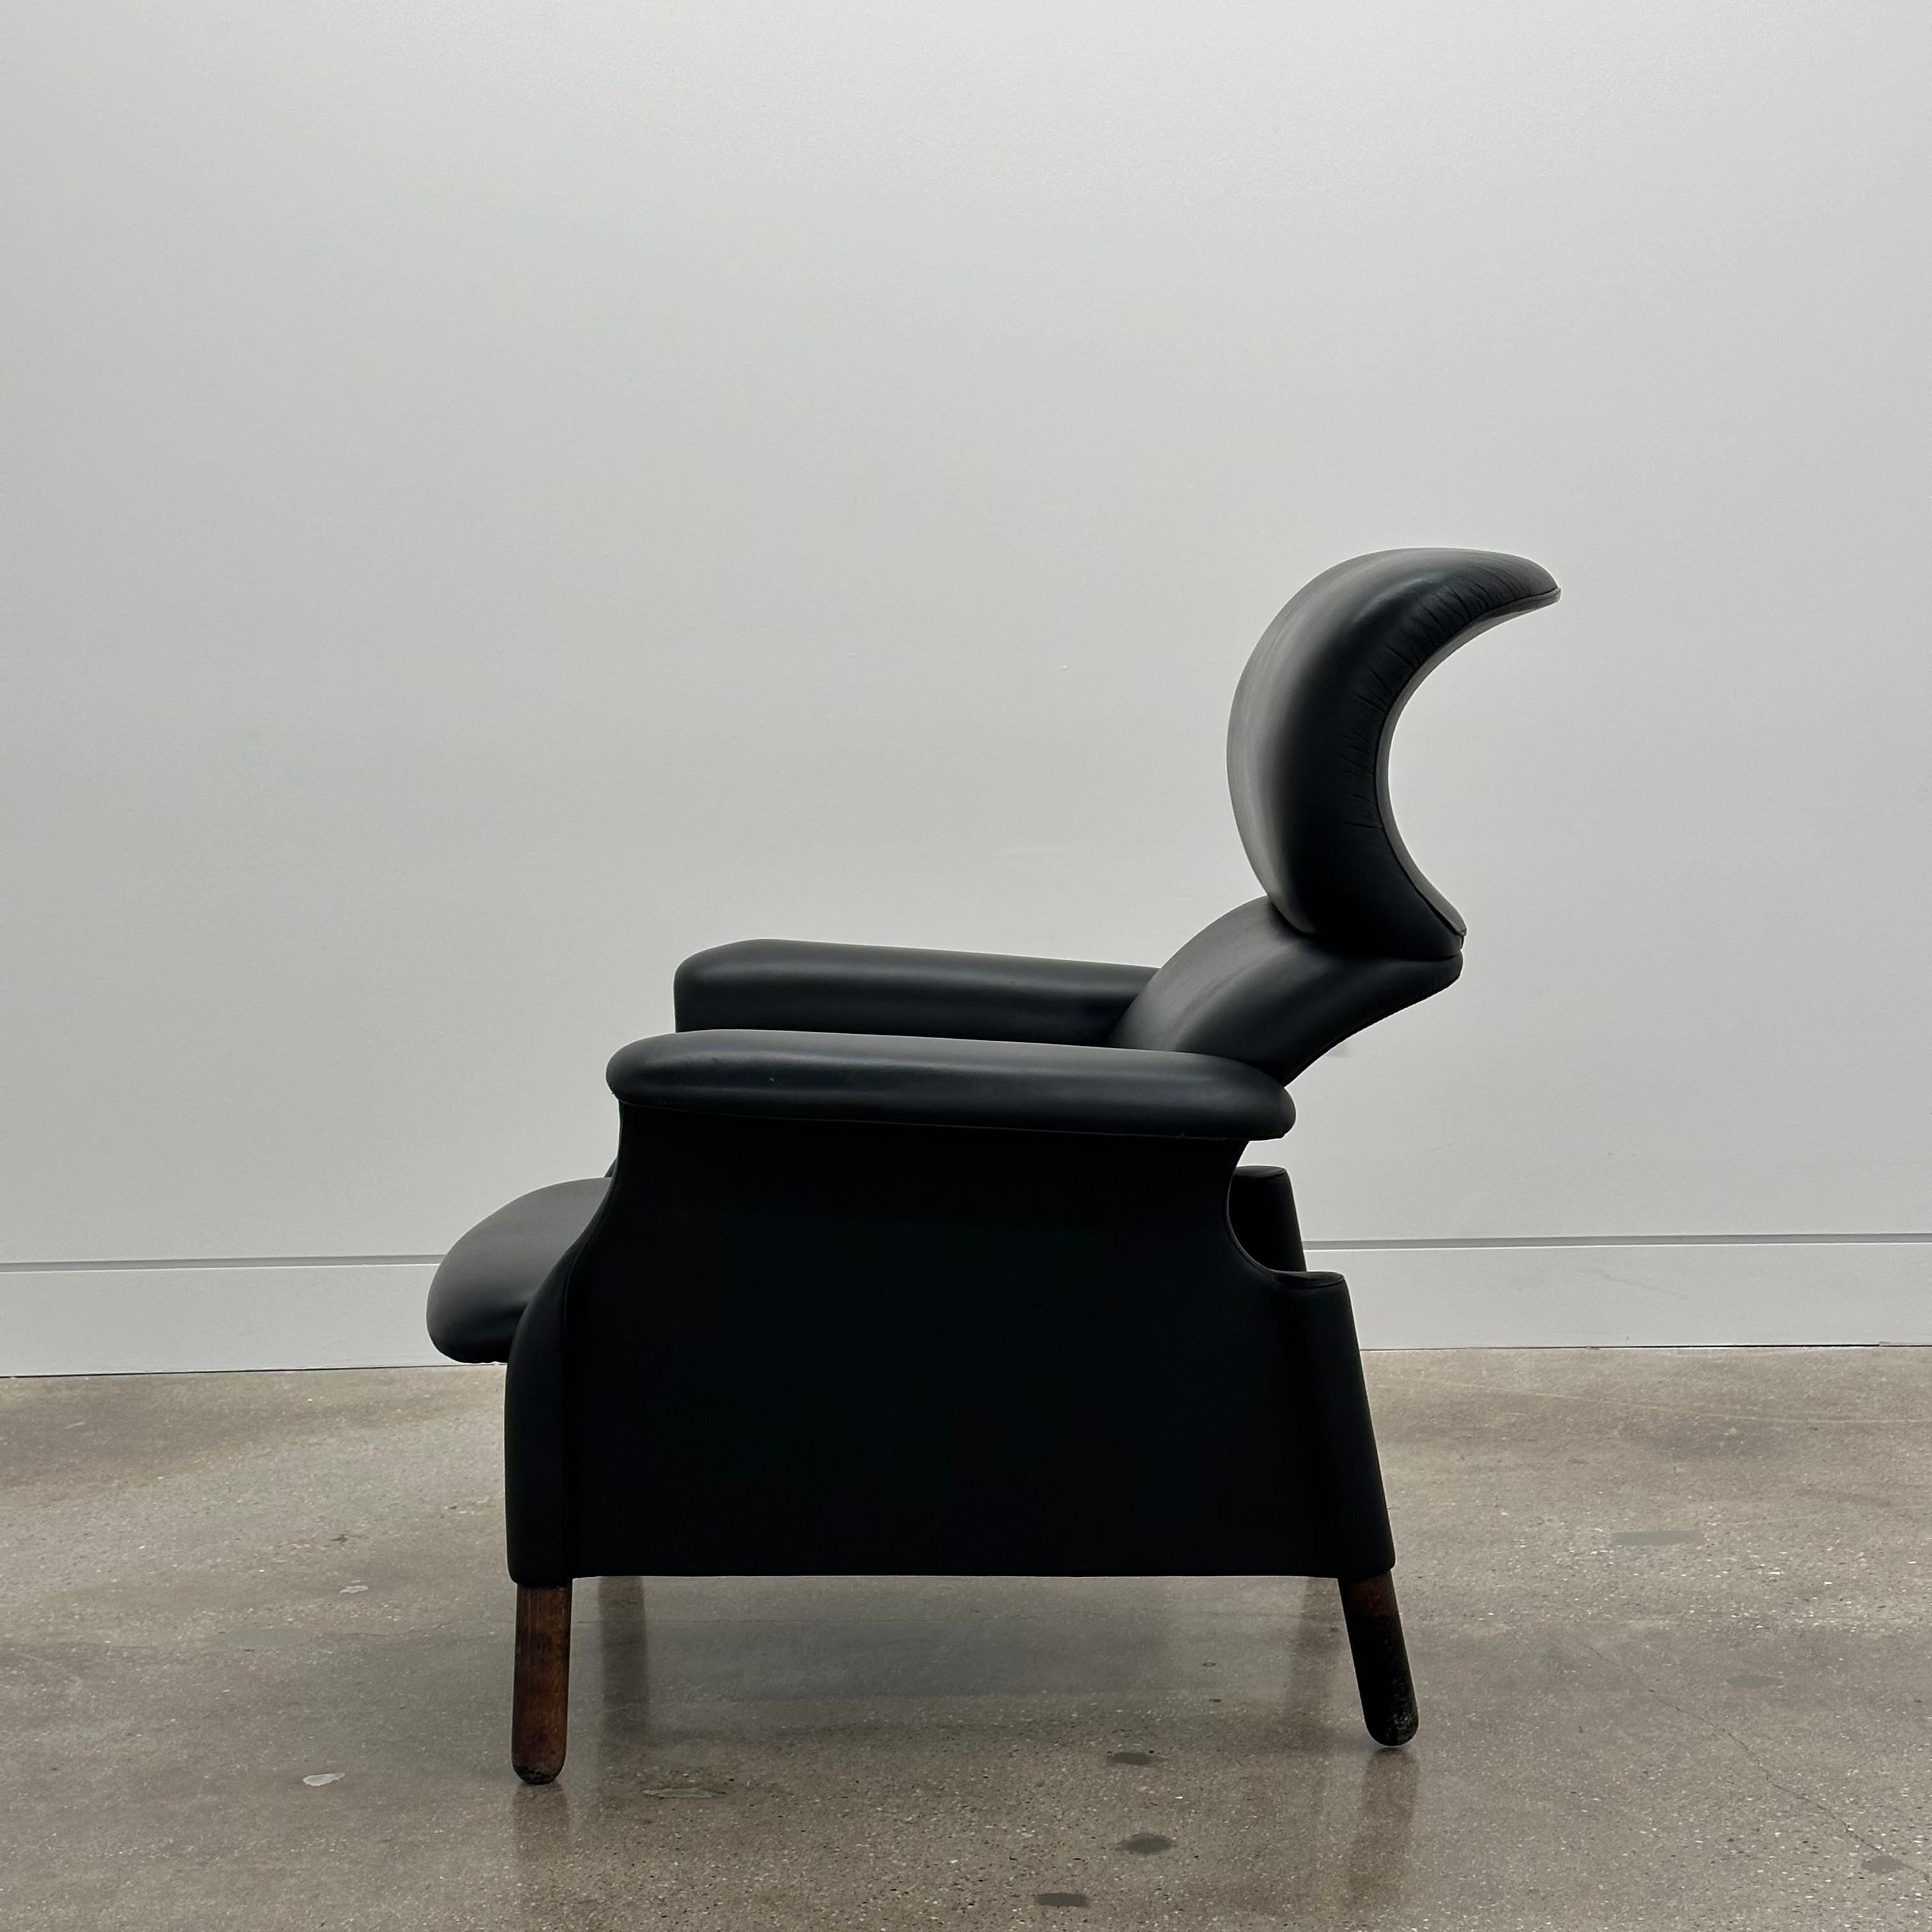 Der von Achille & Pier Giacomo Castiglioni entworfene Lounge-Sessel San Luca ist eine zeitlose Ikone der italienischen Designgeschichte. Dieser Sessel wurde ursprünglich 1960 auf der 